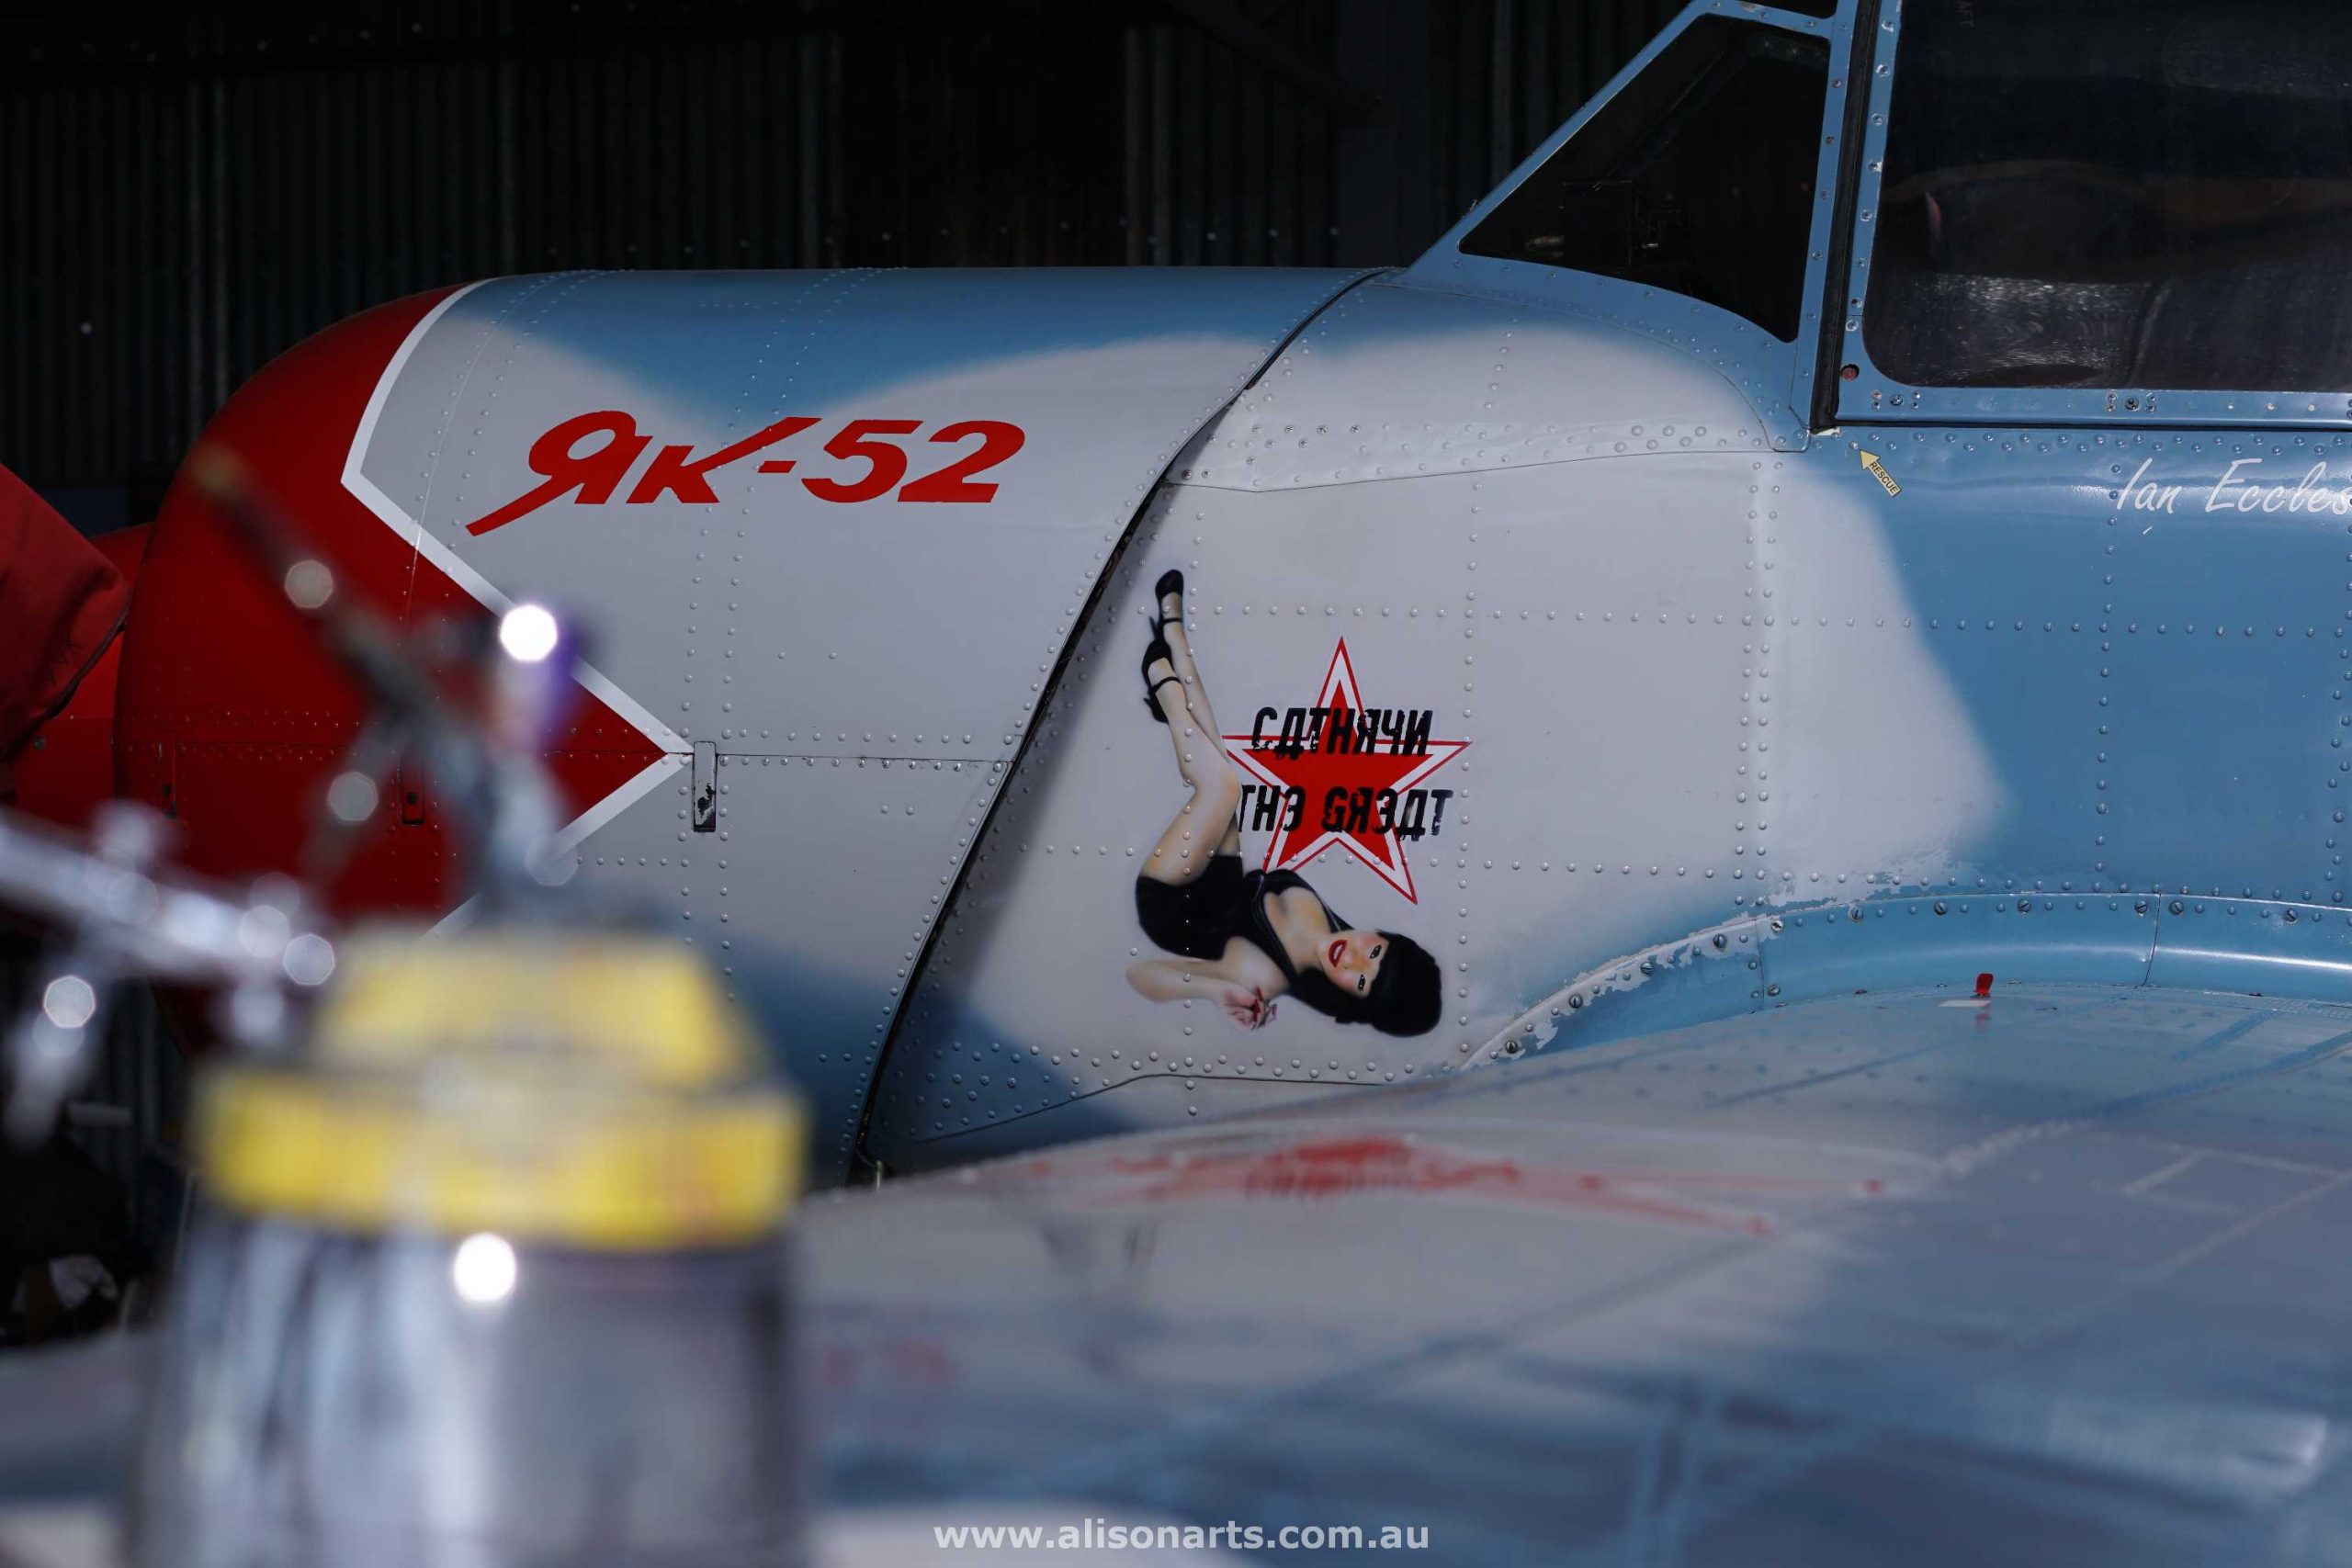 Custom airbrush painted Yak 52 aeroplane